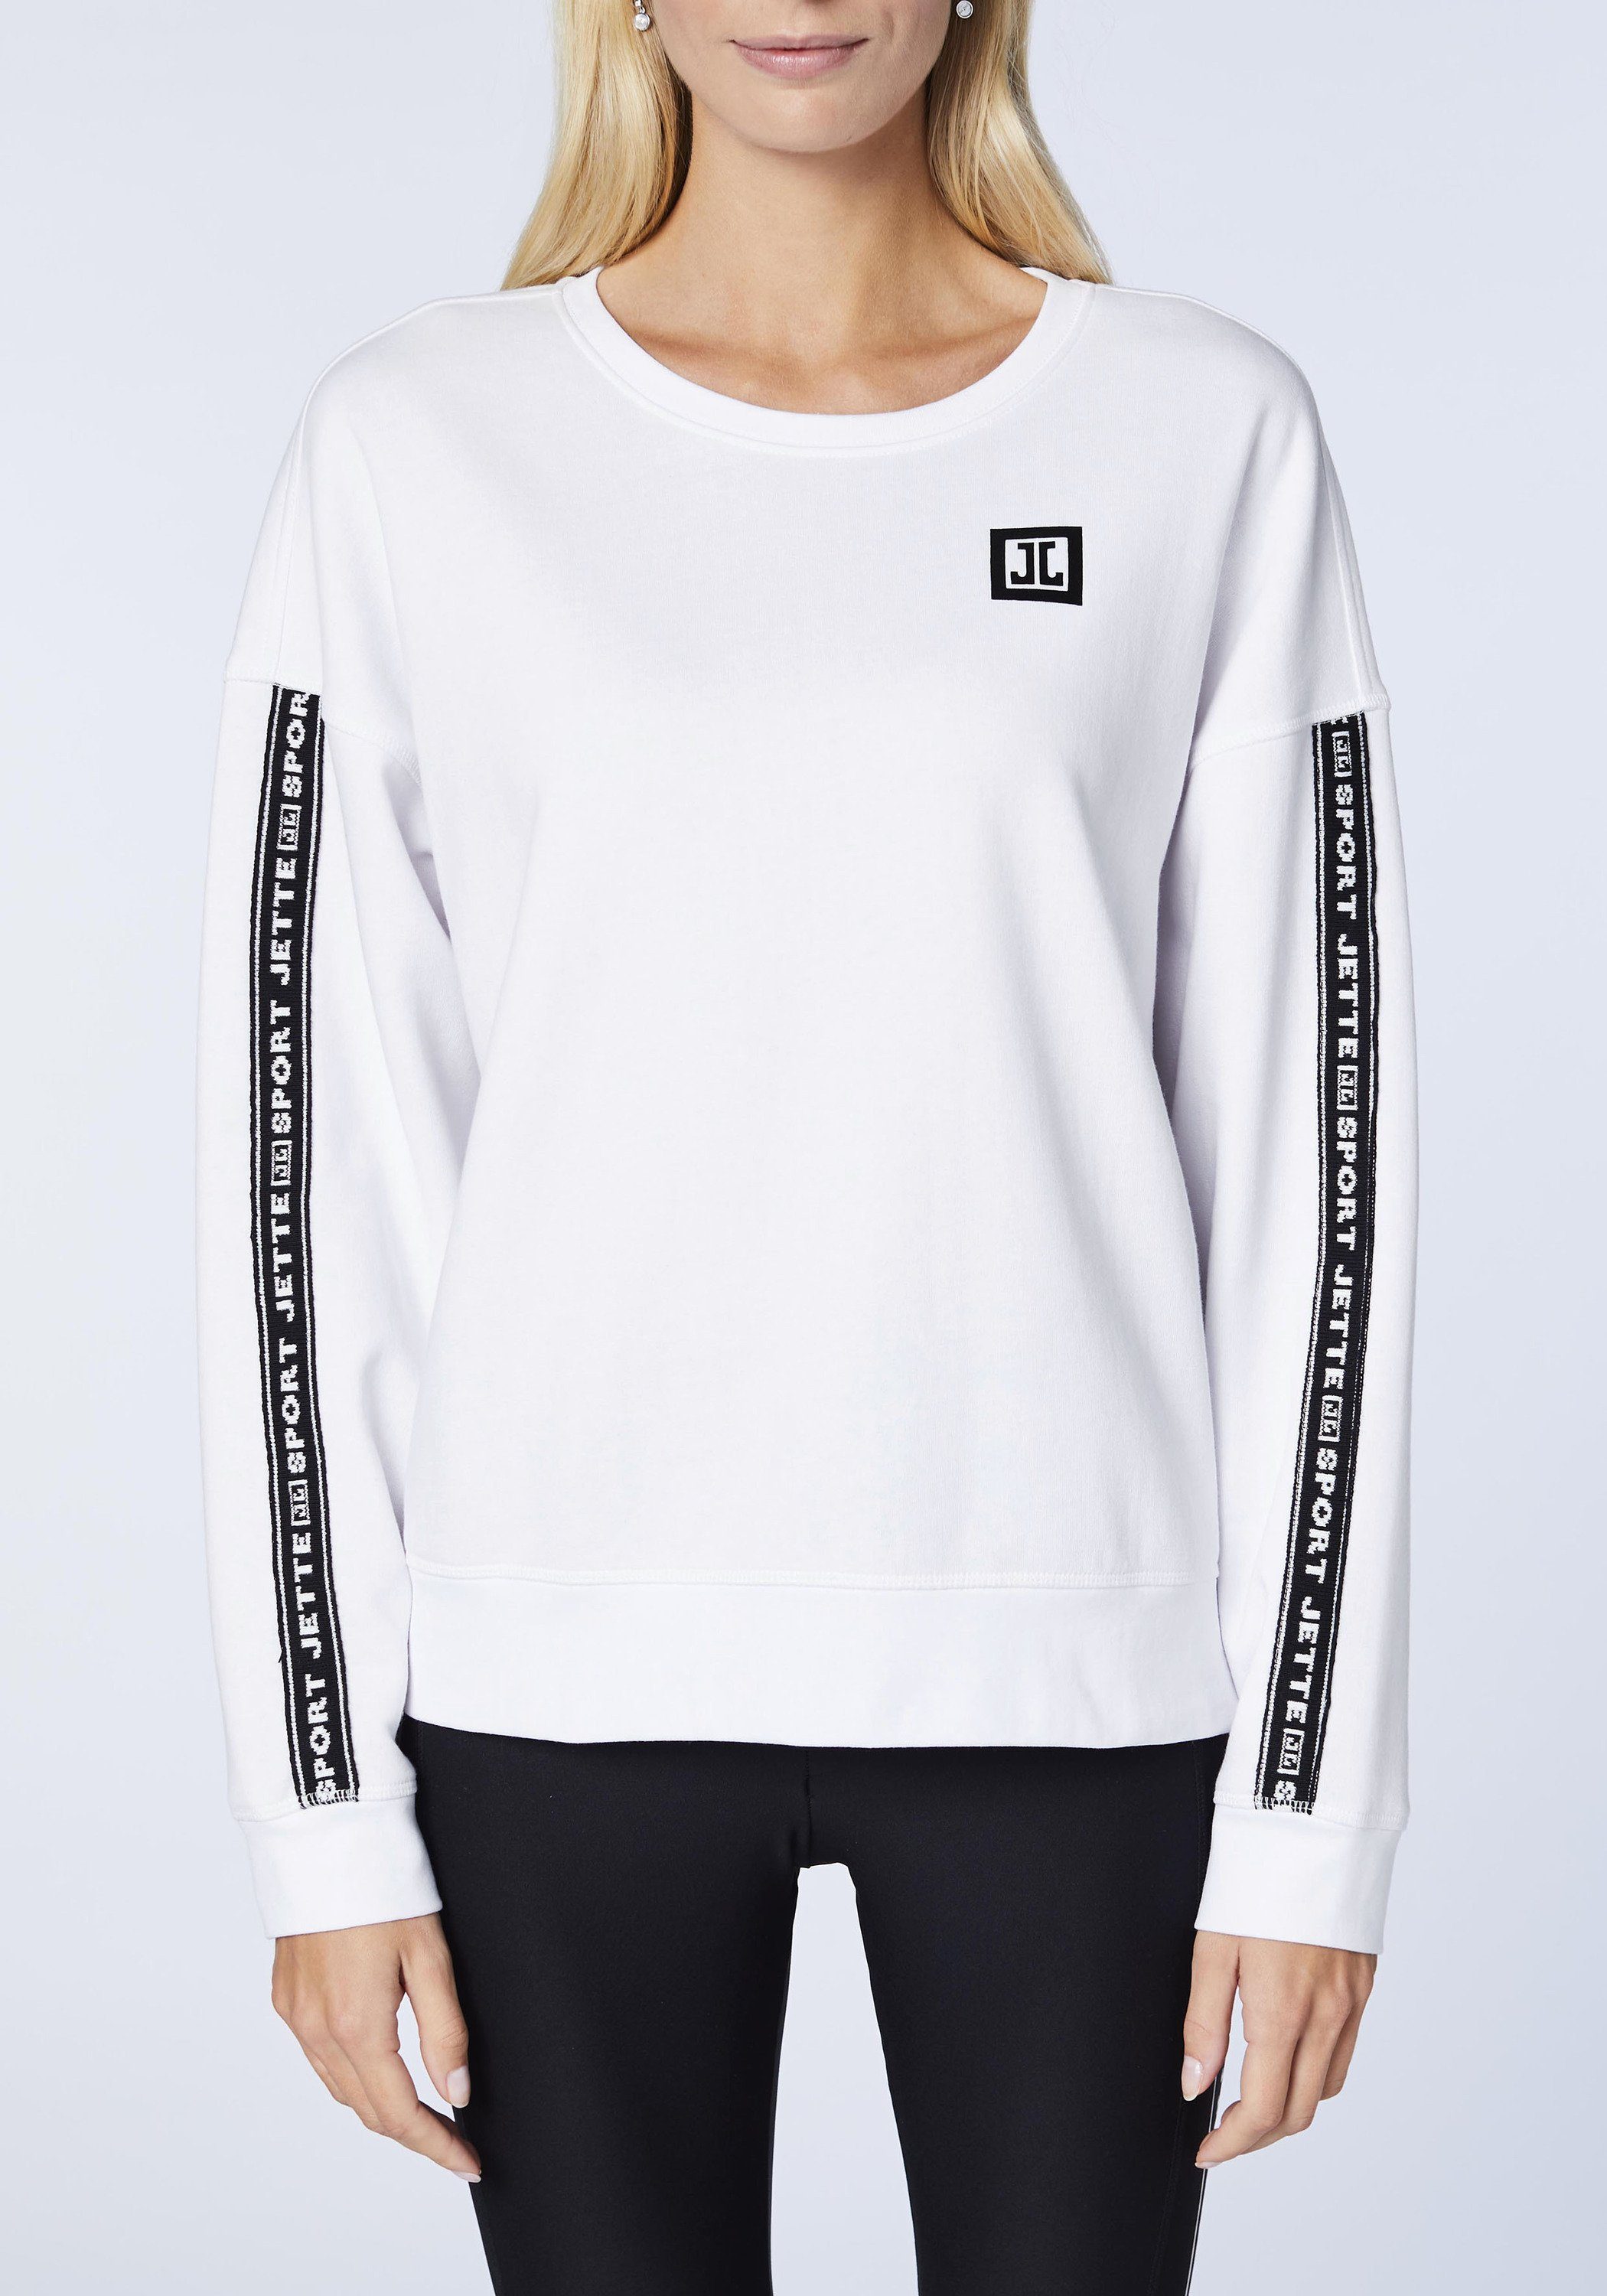 JETTE SPORT Label-Design im Bright 11-0601 Sweatshirt White